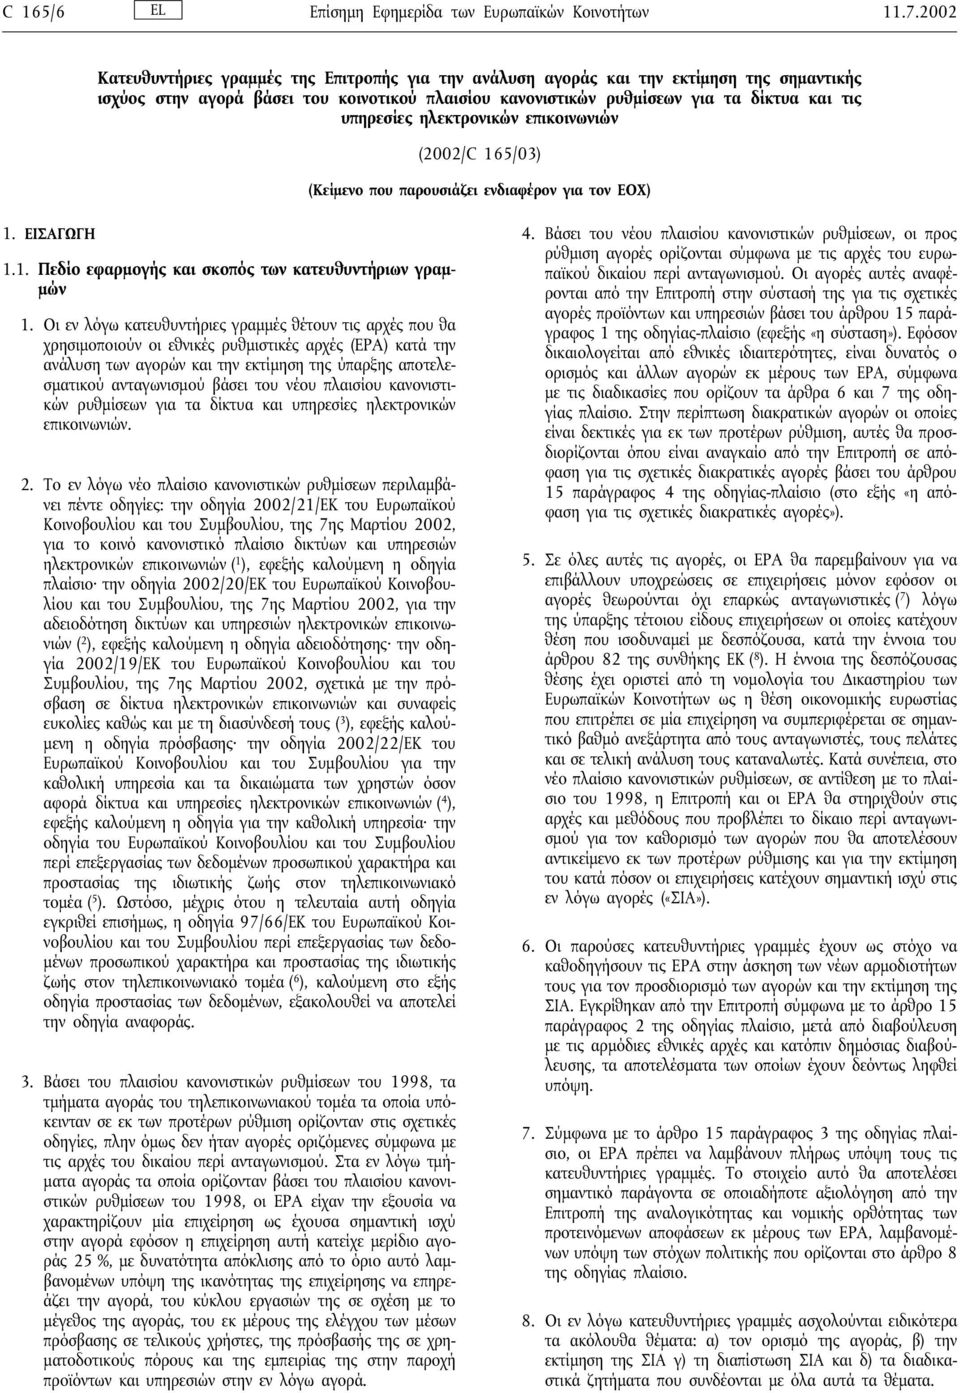 ηλεκτρονικών επικοινωνιών (2002/C 165/03) (Κείµενο που παρουσιάζει ενδιαφέρον για τον ΕΟΧ) 1. ΕΙΣΑΓΩΓΗ 1.1. Πεδίο εφαρµογής και σκοπός των κατευθυντήριων γραµ- µών 1.